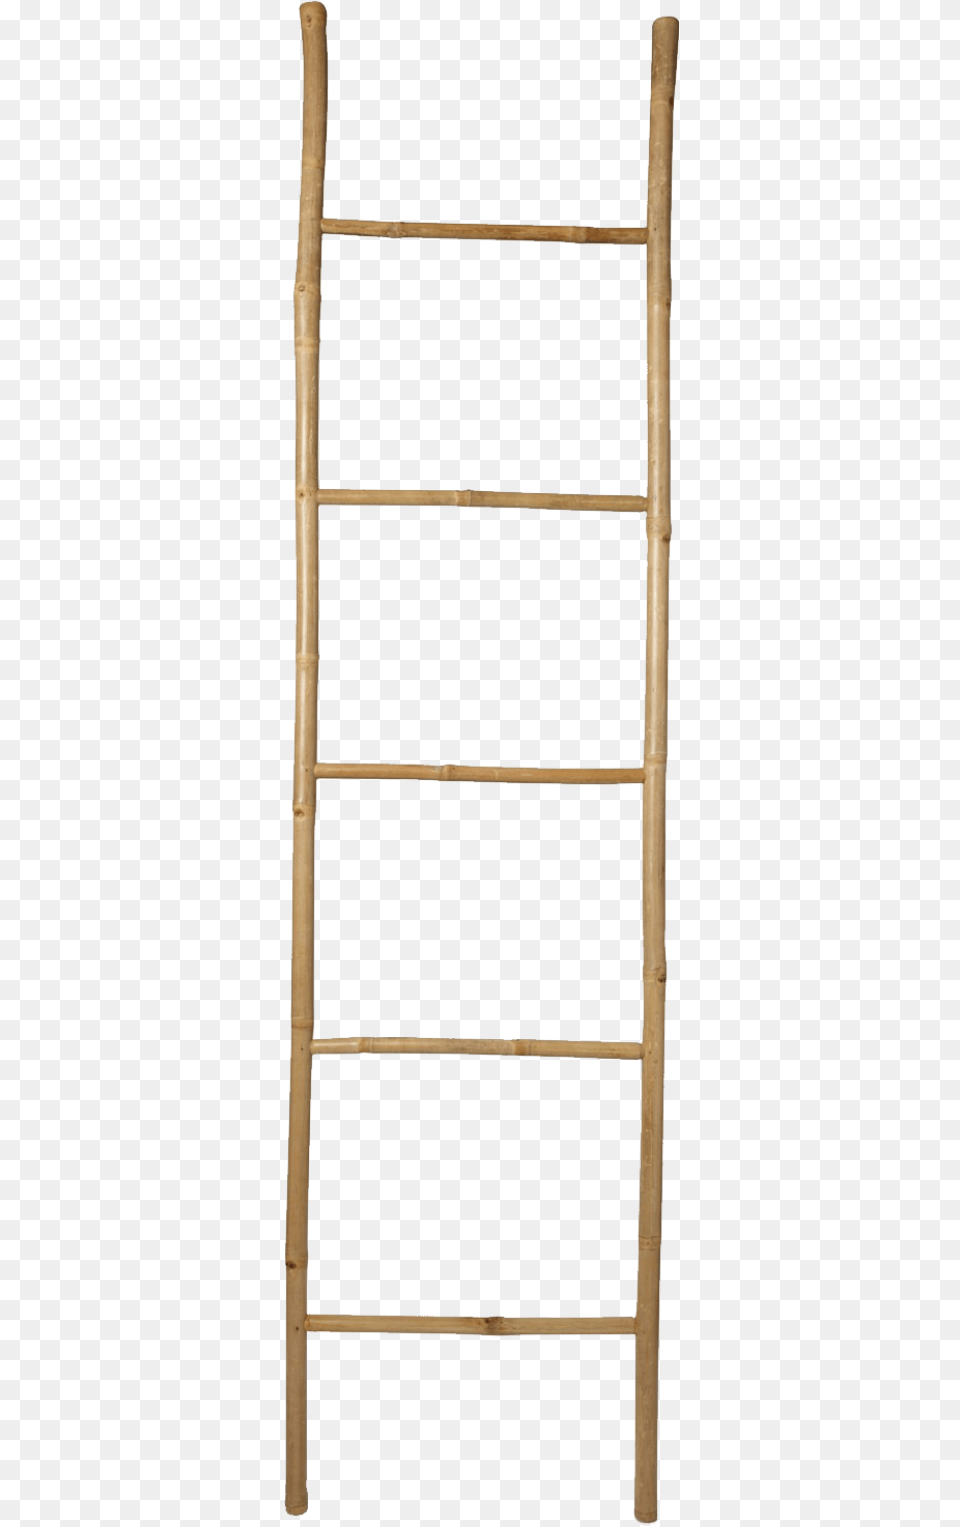 Ladder Sticker Wooden Ladder Transparent Background Free Png Download